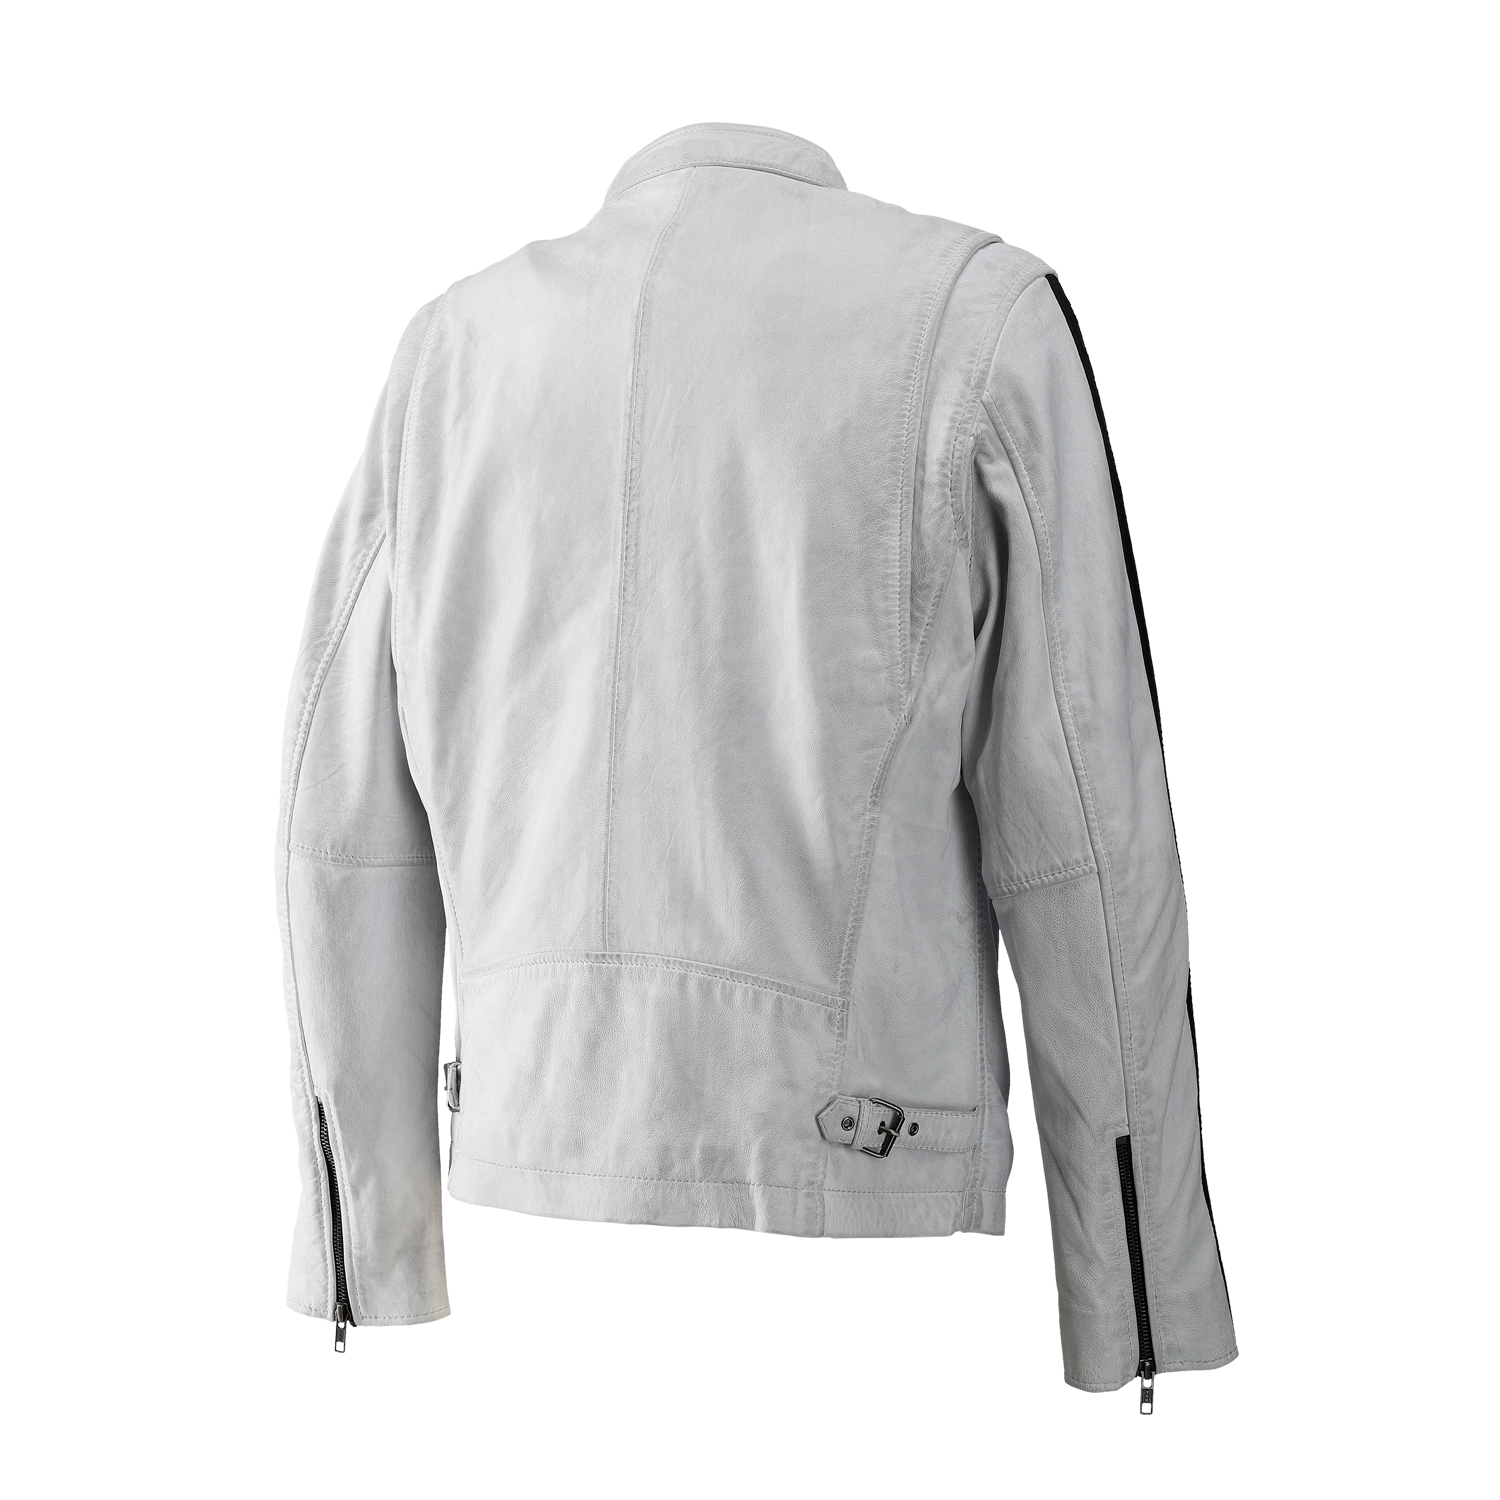 RIDEZ COMP JACKET WHITE/BLACK RLJ1101 Riders jacket